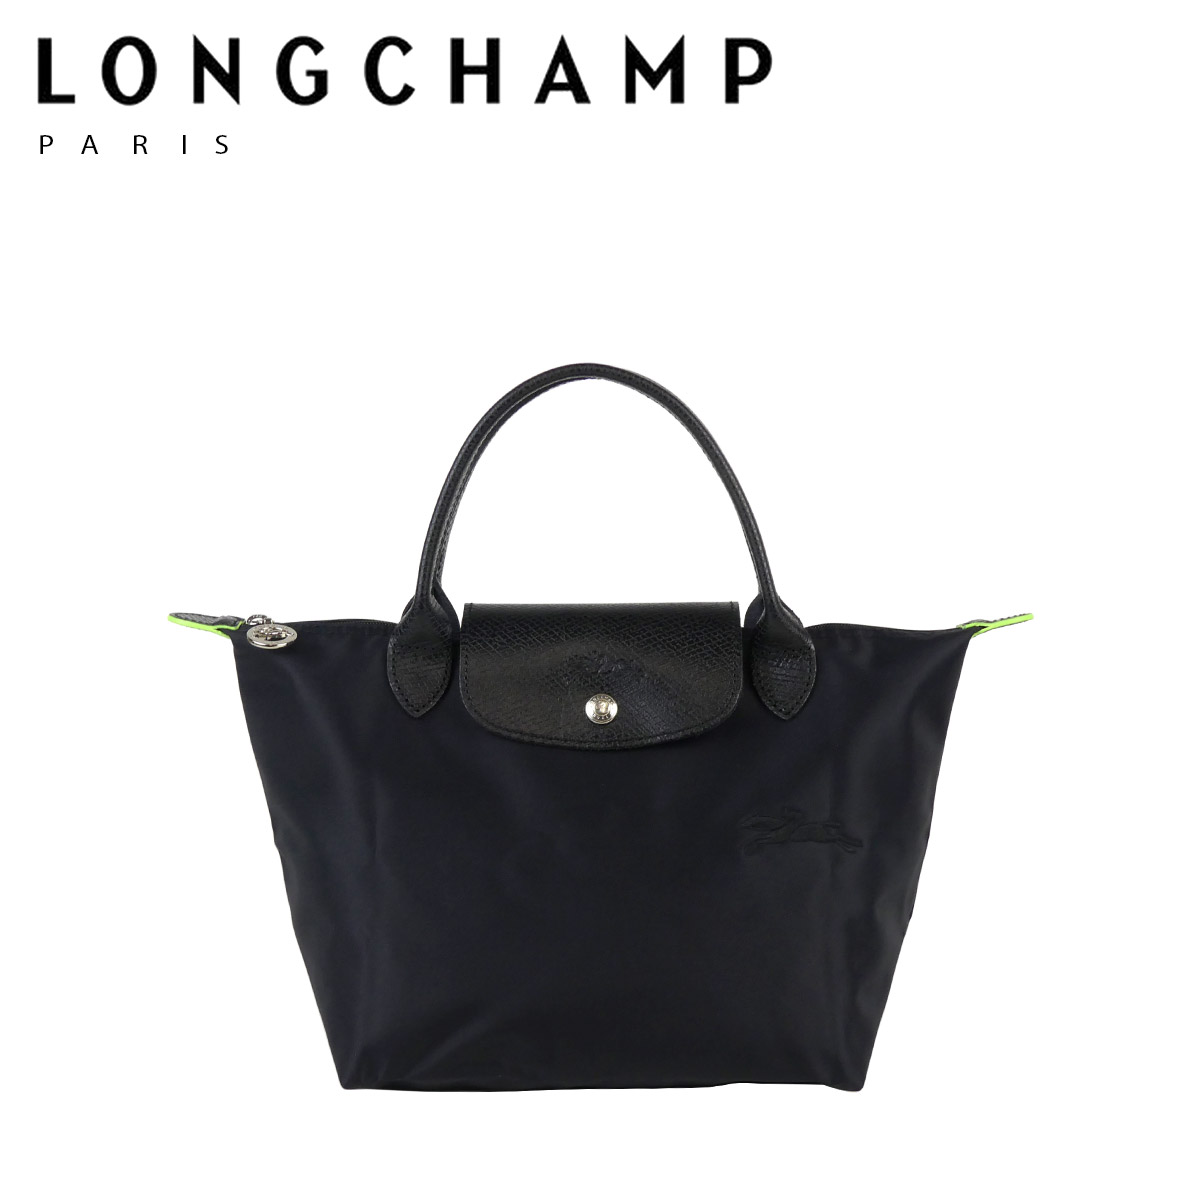 Longchamp ル・プリアージュ 黒×黒 トートバッグ ブラック レディース 